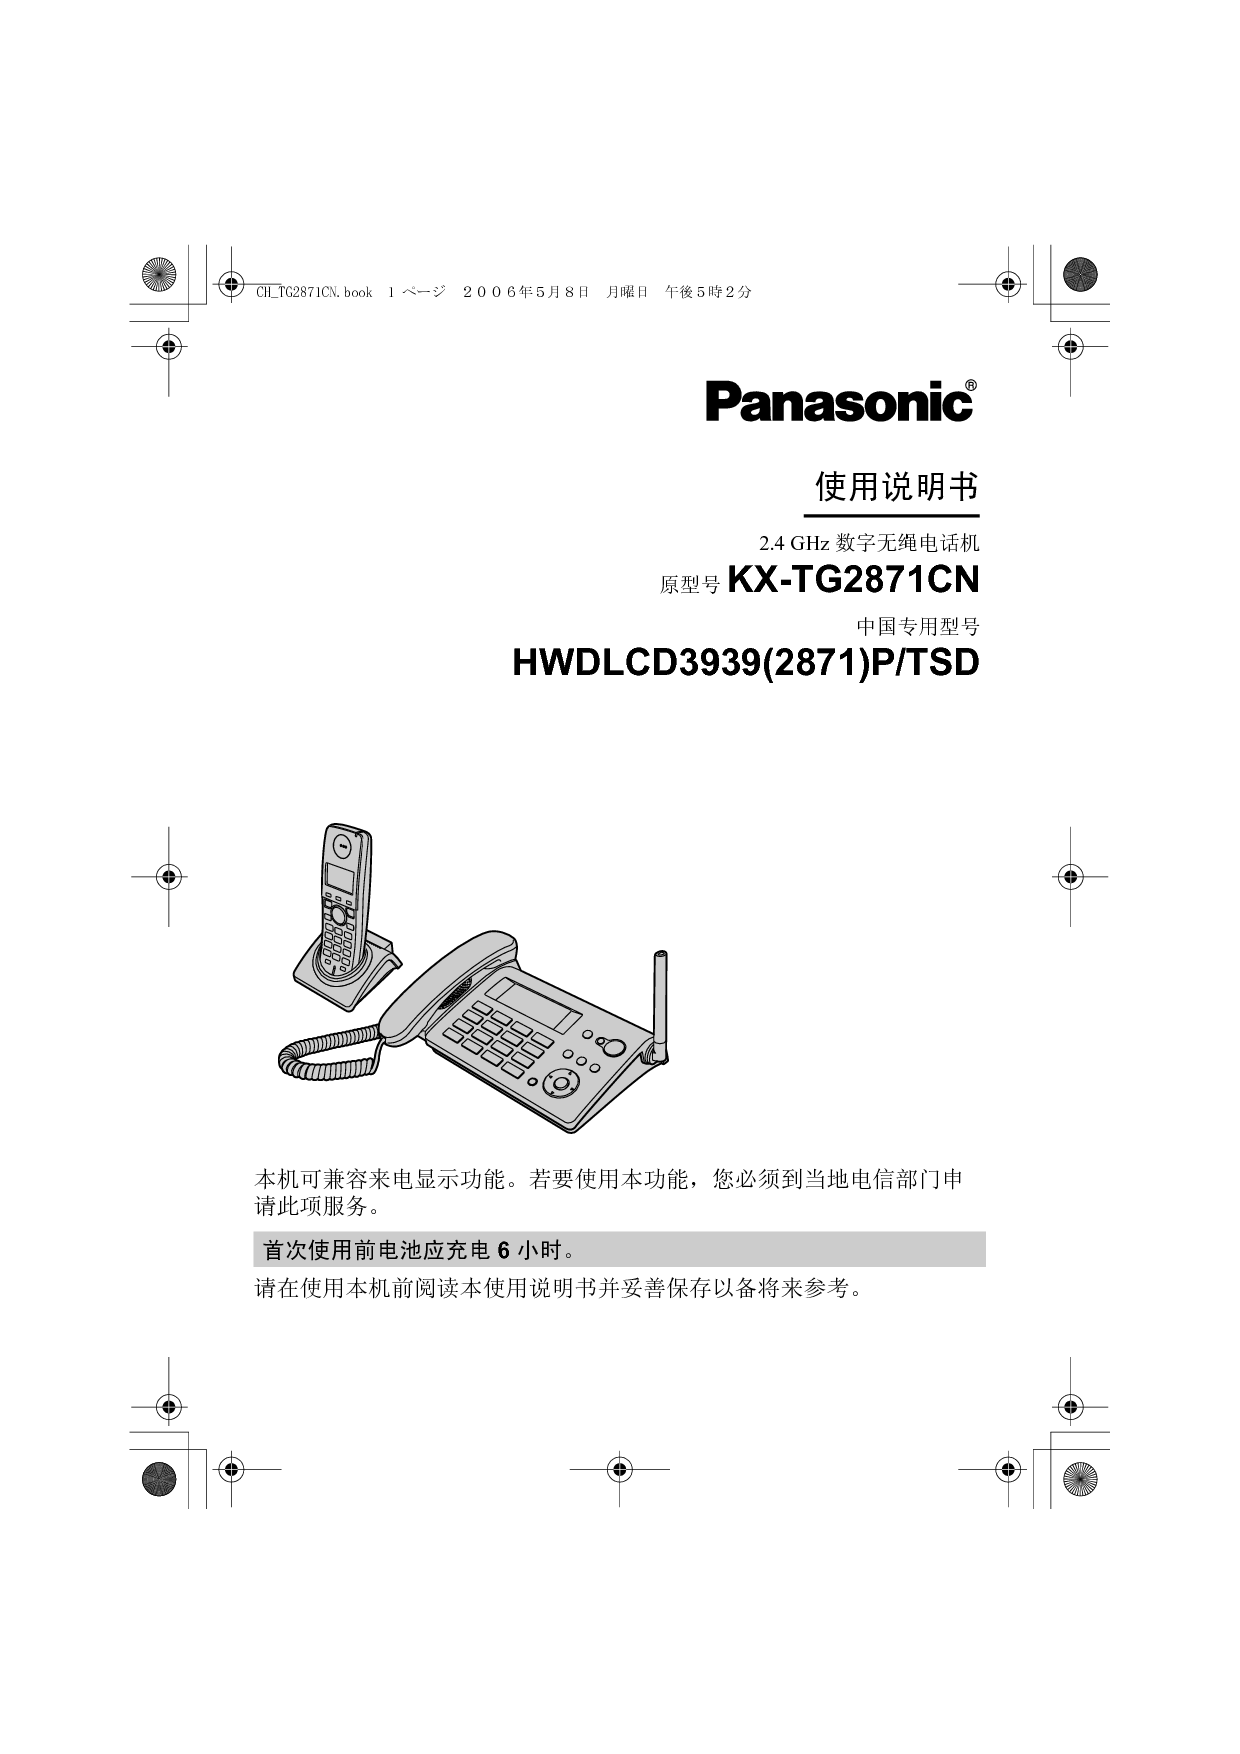 松下 Panasonic HWDLCD3939(2871)P/TSD, KX-TG2871CN 说明书 封面